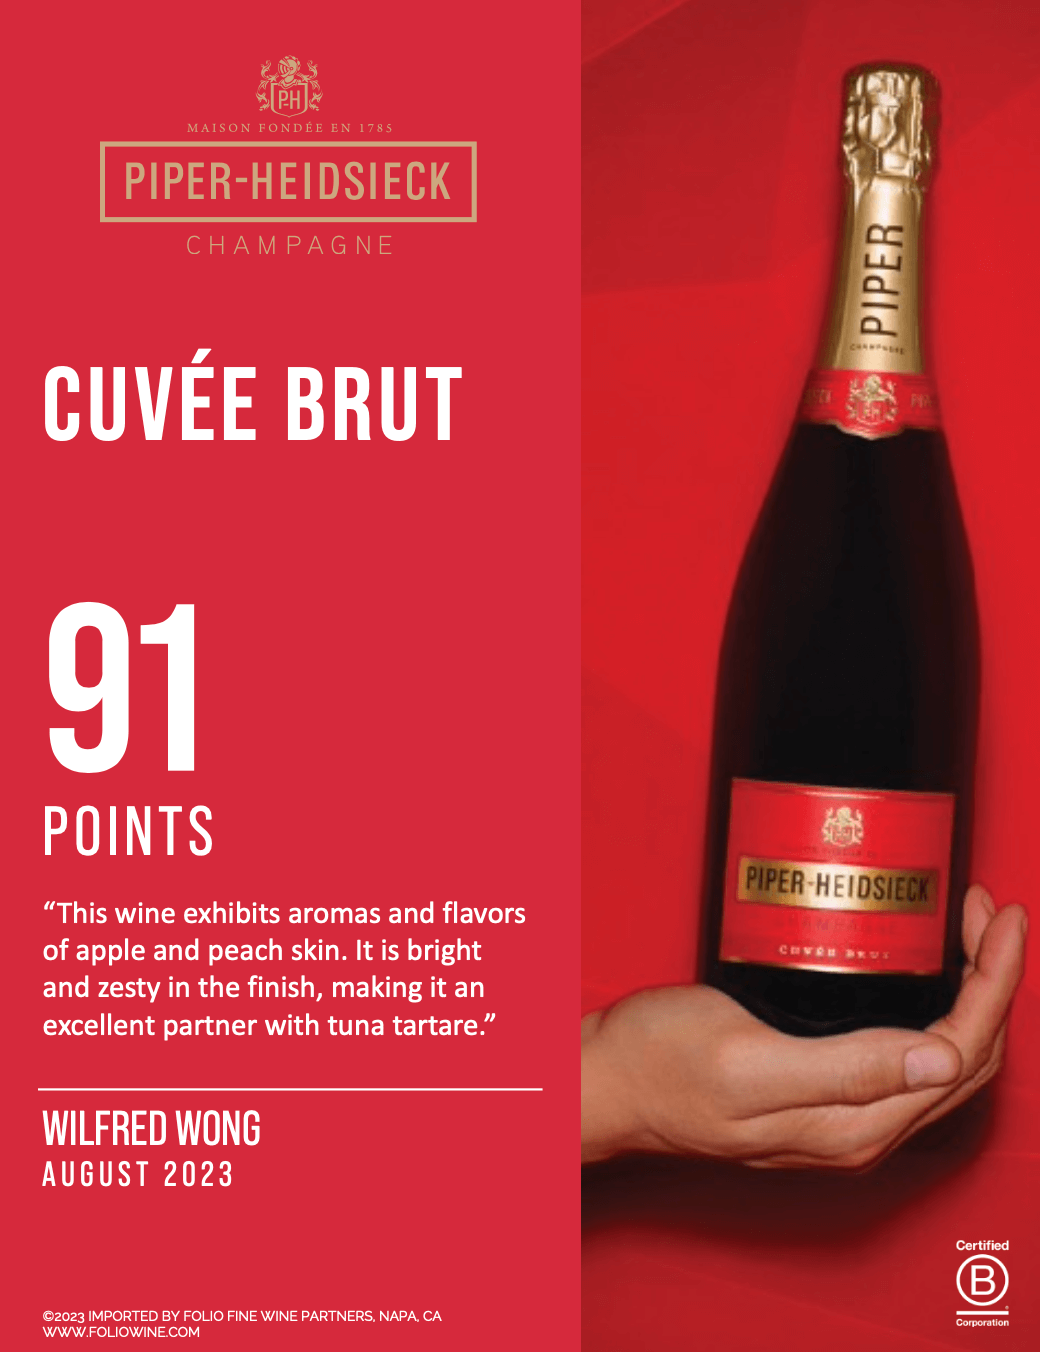 [Im Angebot zum Schnäppchenpreis] Piper-Heidsieck Cuvée Brut - Champagne